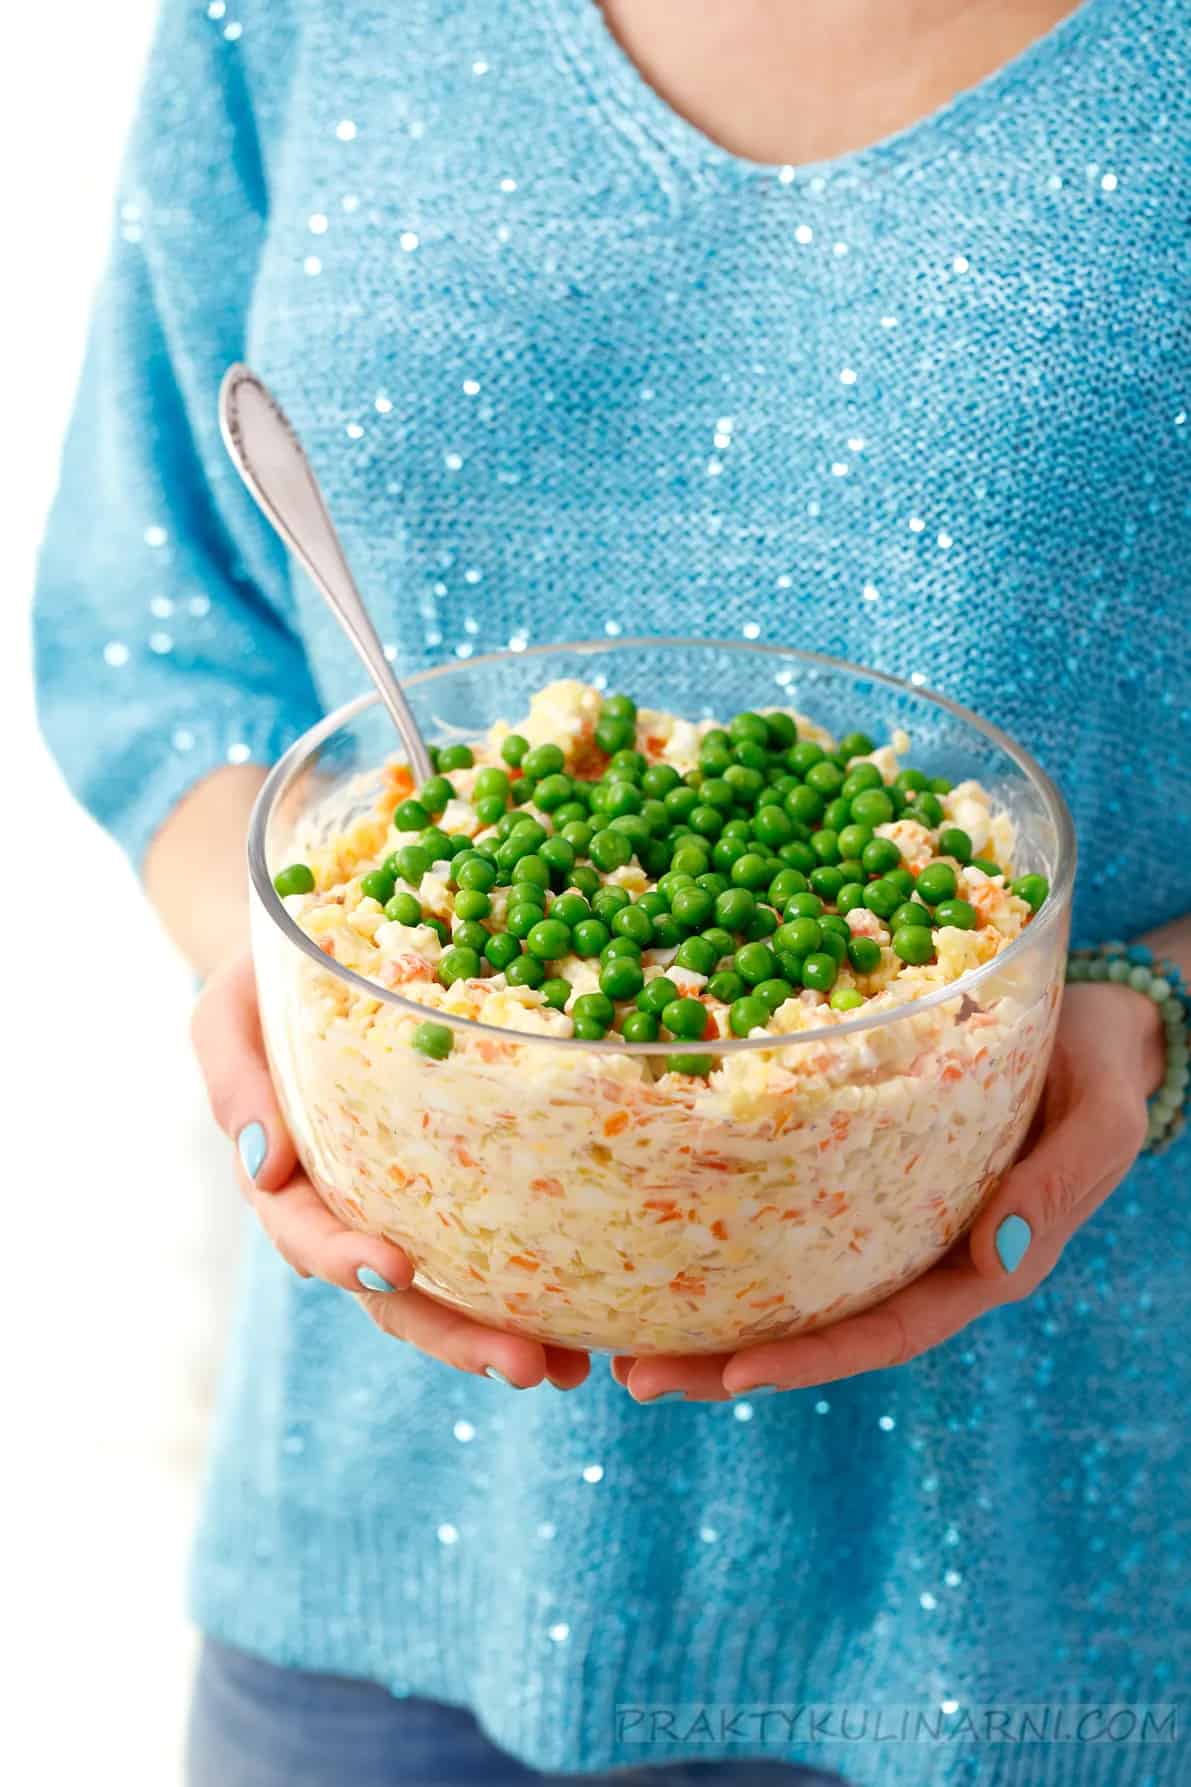 Potrawy wigilijne, 12 pomysłów na wigilijny stół salatka jarzynowa